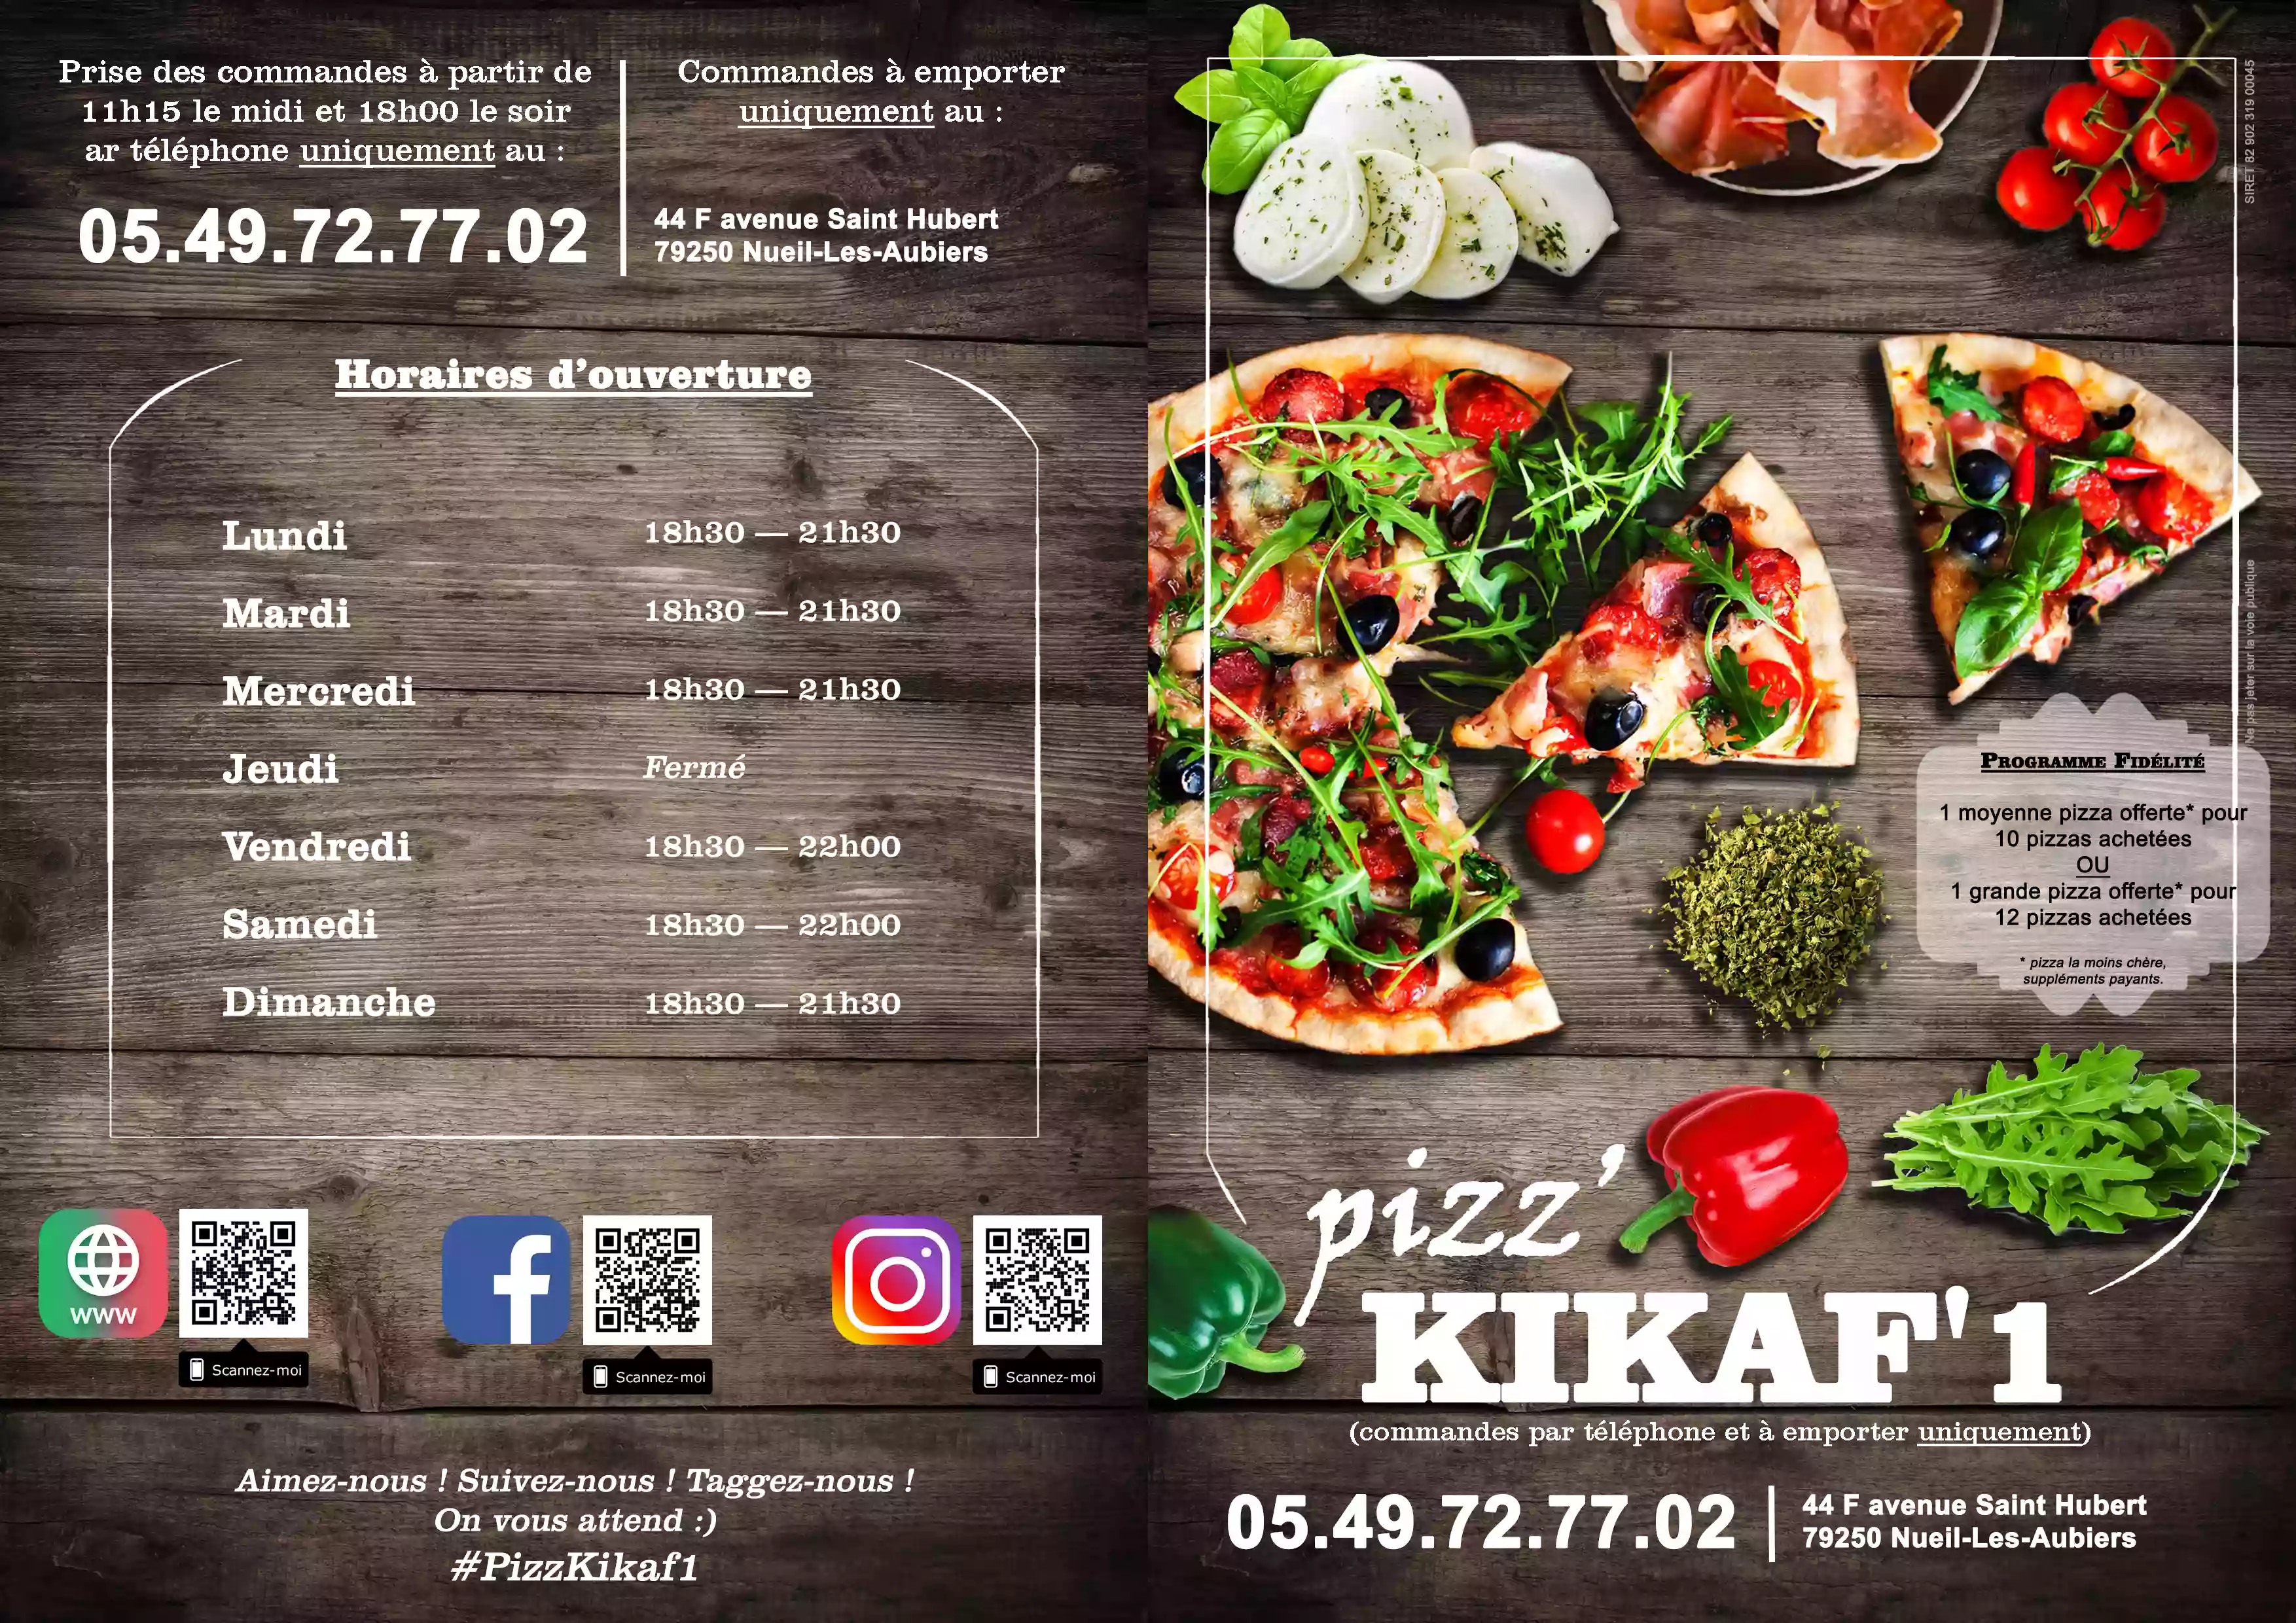 Pizz' Kikaf' 1